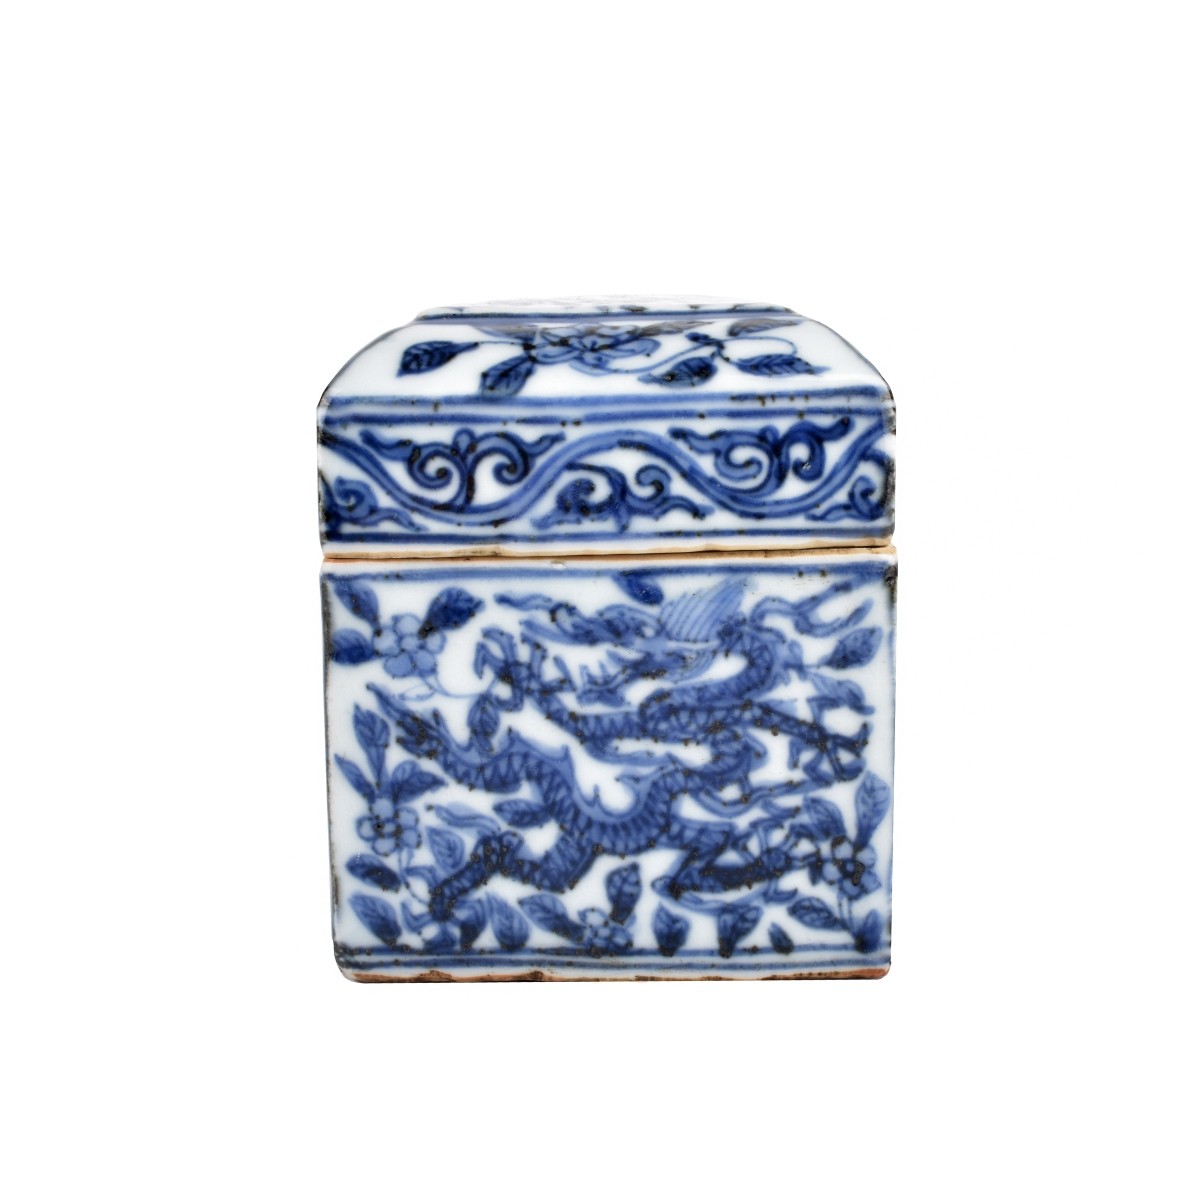 Chinese Ming style Box